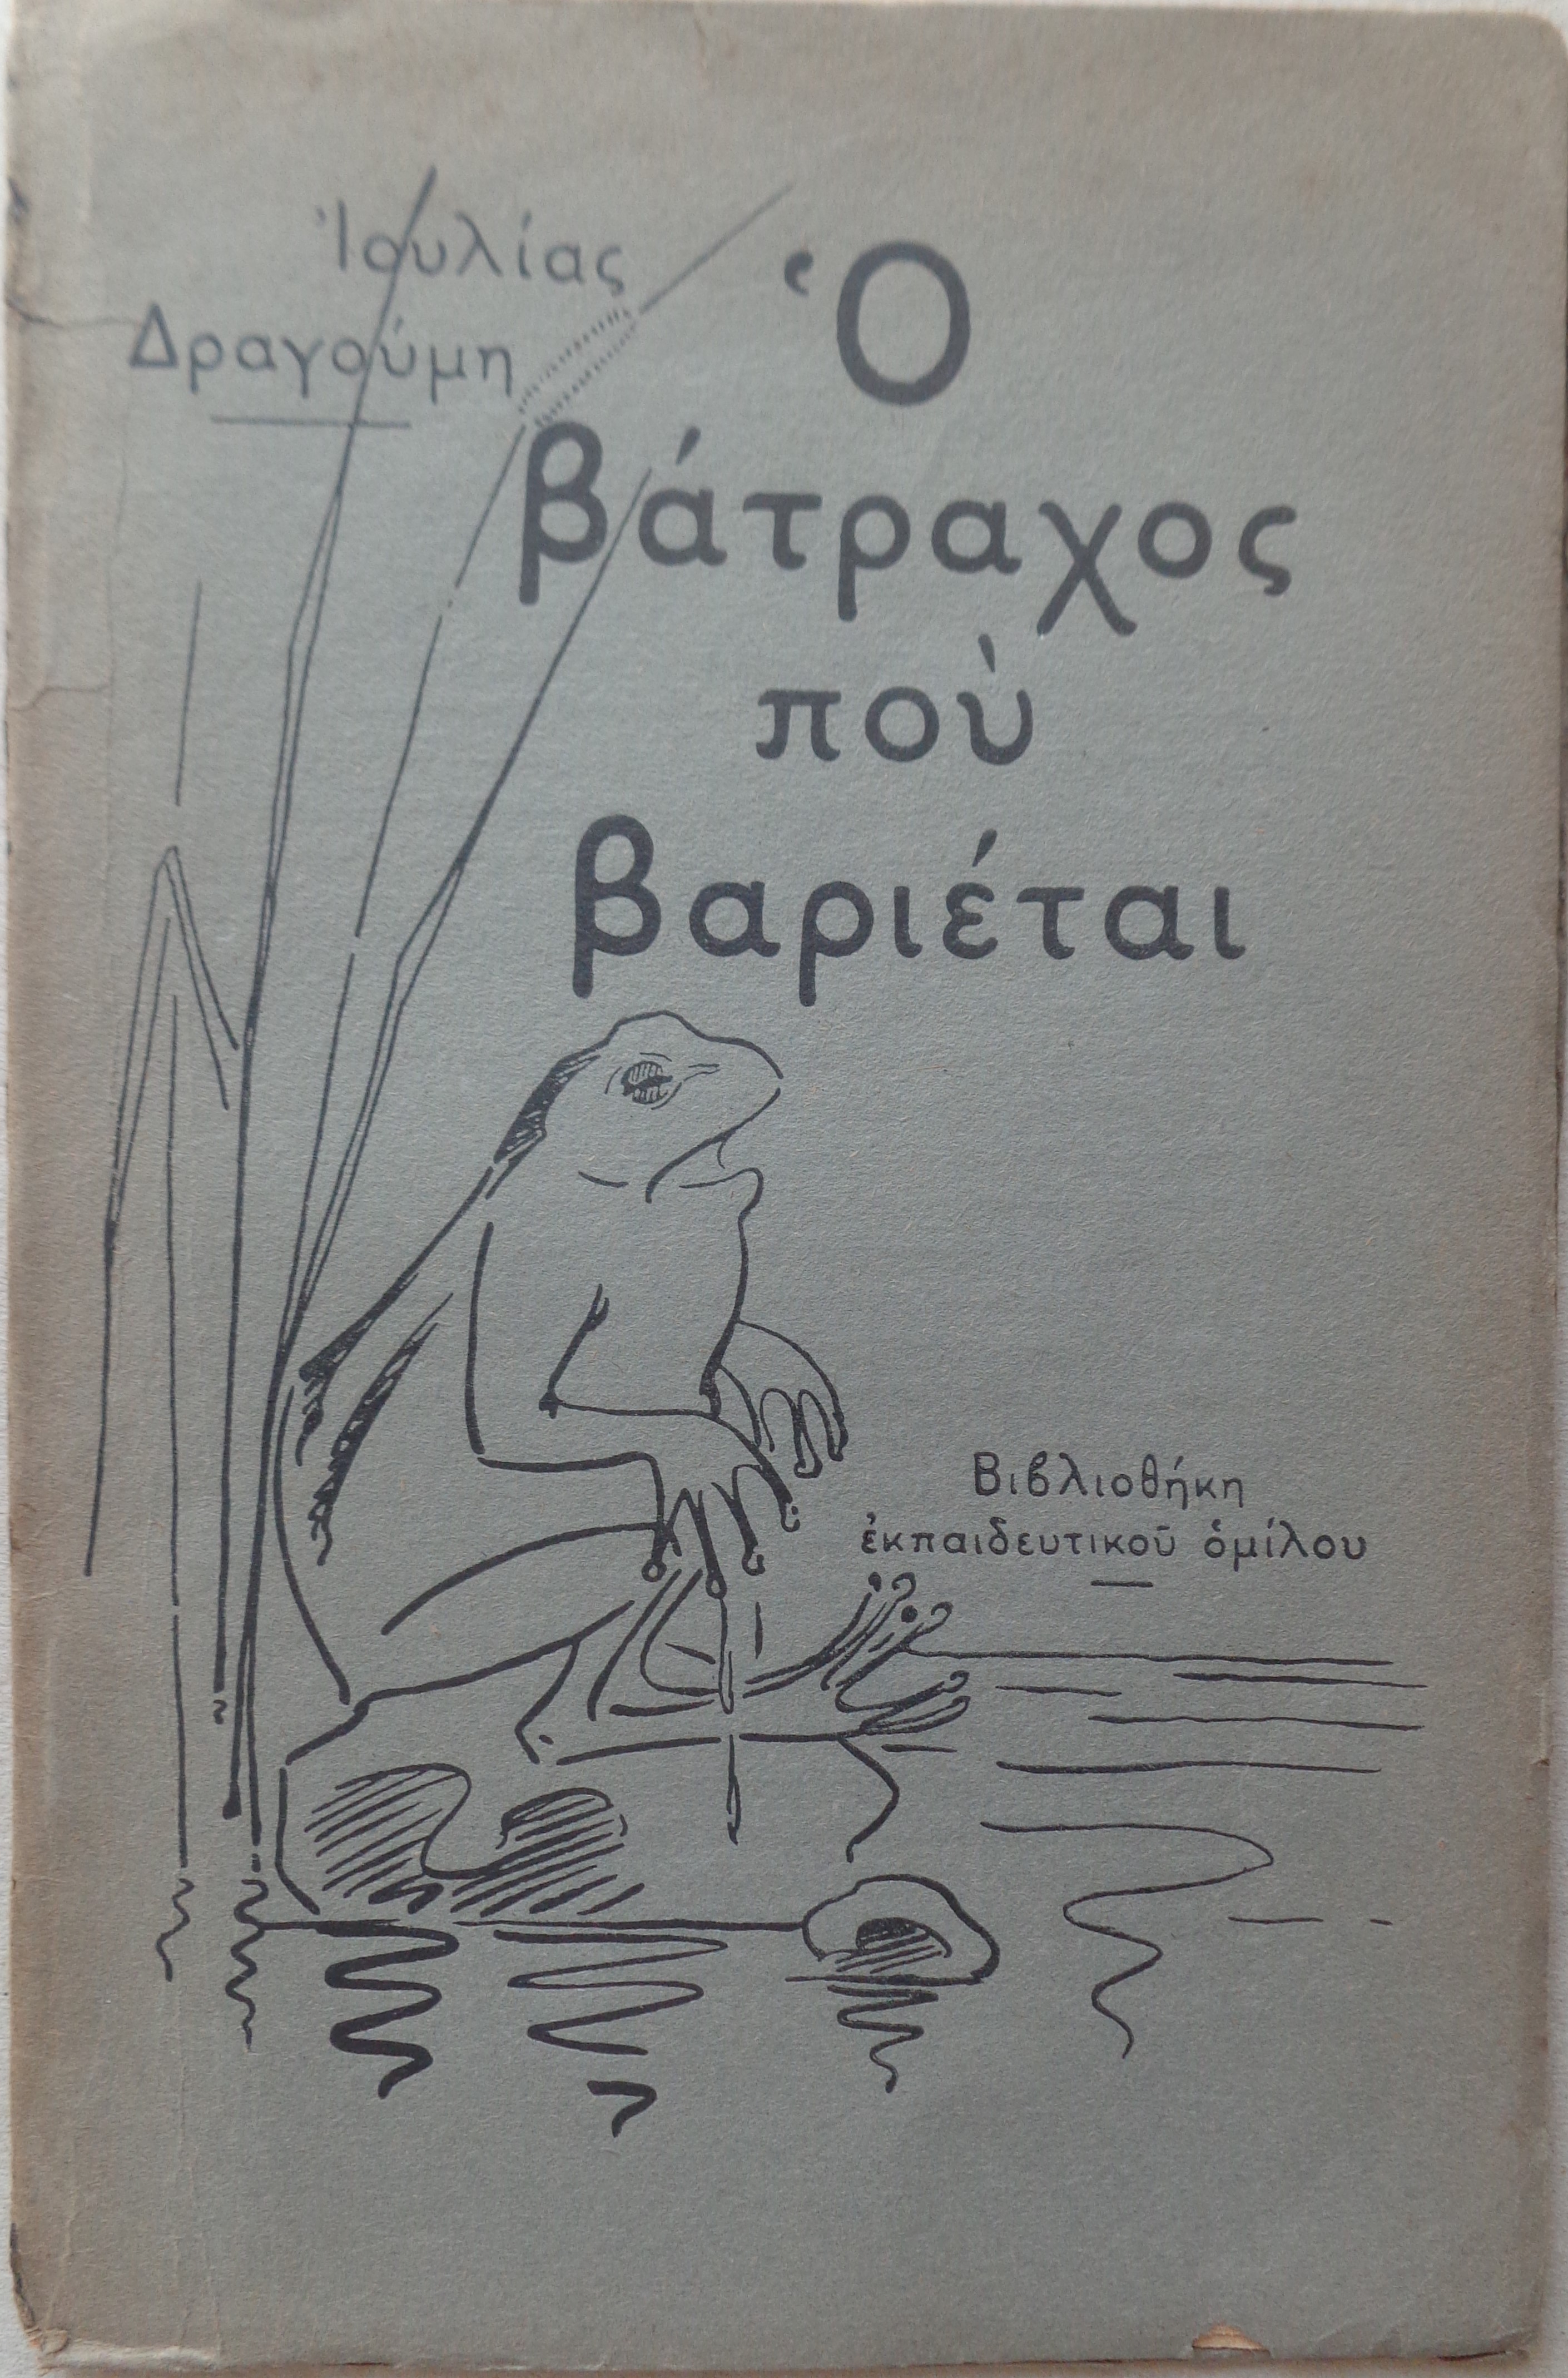 ΙΟΥΛΙΑ ΔΡΑΓΟΥΜΗ Ο βάτραχος που βαριέται και άλλες ιστορίες Αθήνα, 1919 ΑΚΟΠΟ ΑΝΤΙΤΥΠΟ 